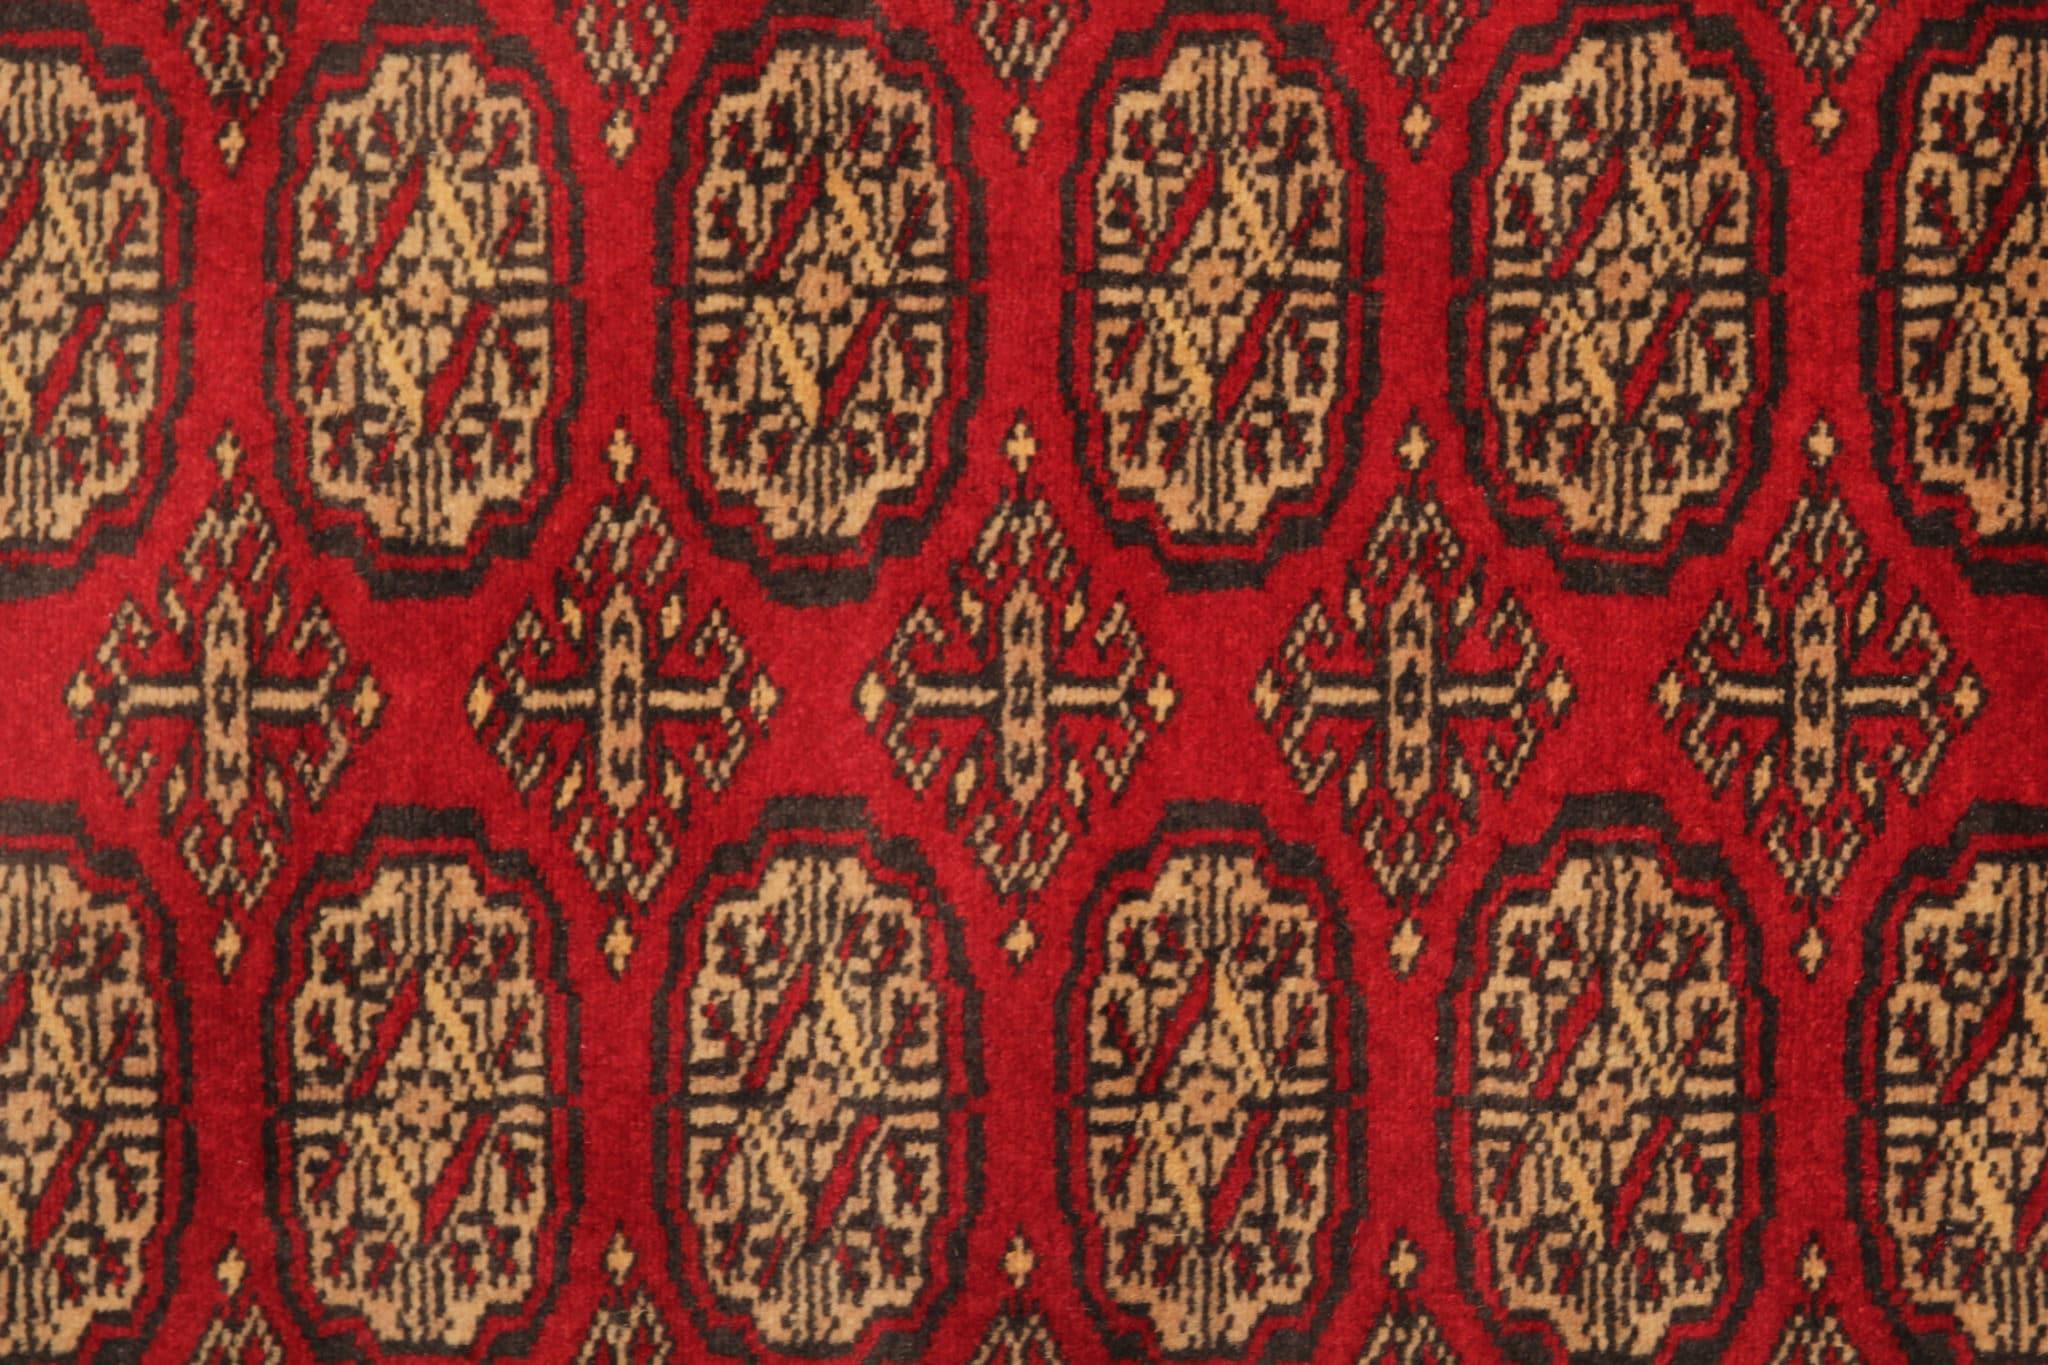 Der exquisite rote Läufer mit wunderschönem Medaillon-Muster wird in sorgfältiger Handarbeit hergestellt. Dieser Orientteppich im Vintage-Stil stammt aus Pakistan, Turkmenistan und Bokhara und zeichnet sich durch eine Mischung aus Wolle und